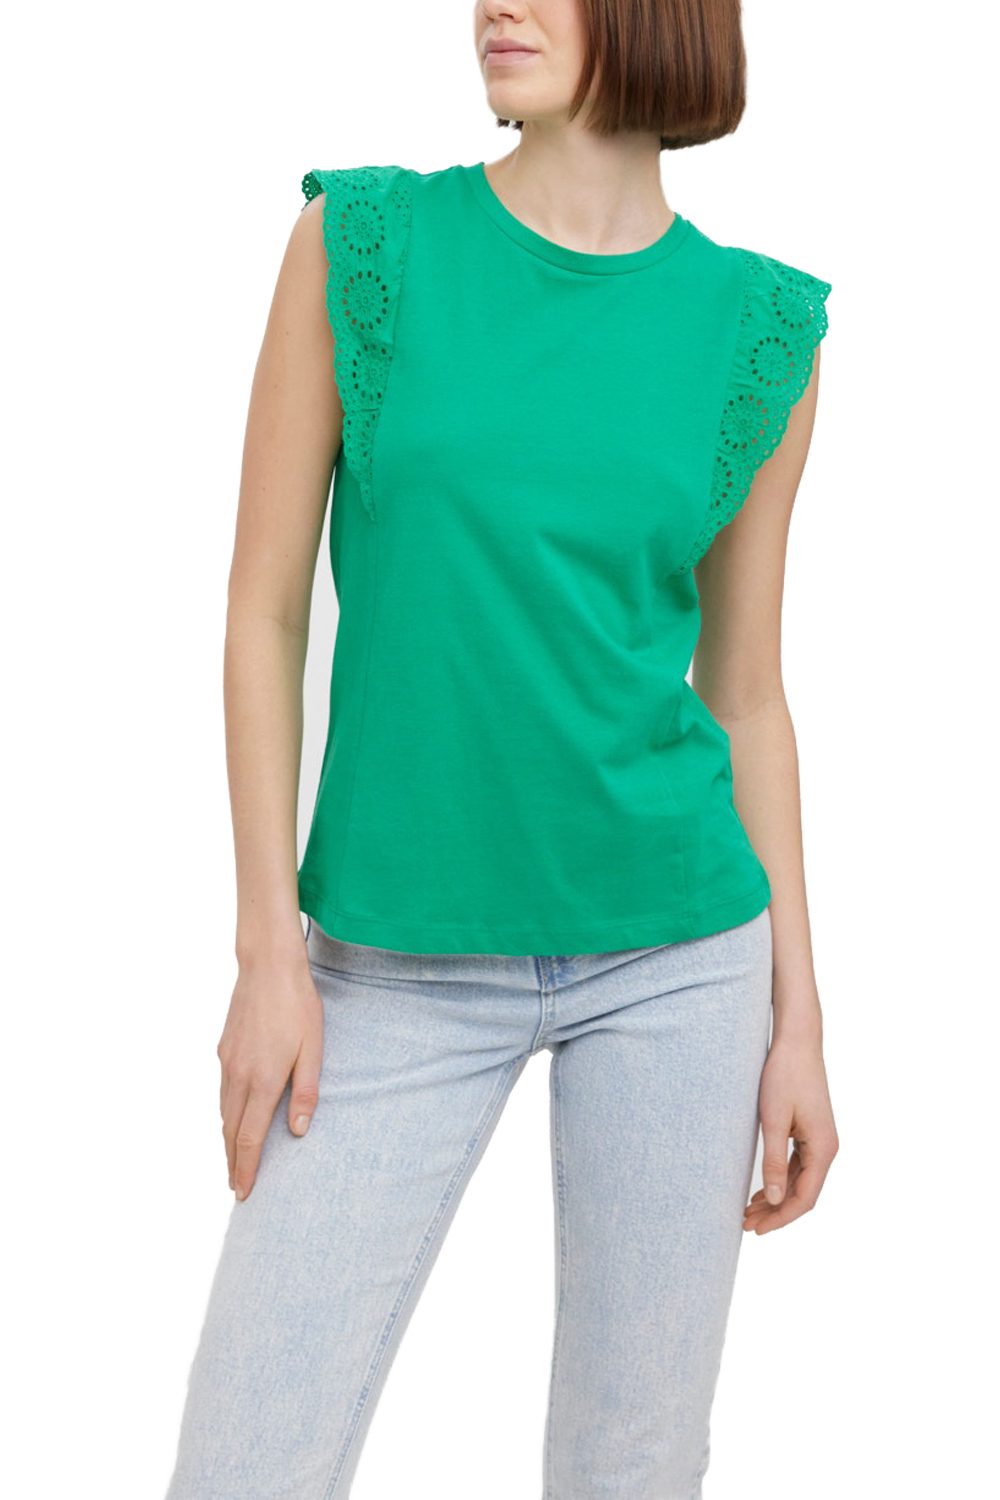 Γυναικεία Μπλούζα Αμάνικη VERO MODA 10259908 Πράσινη